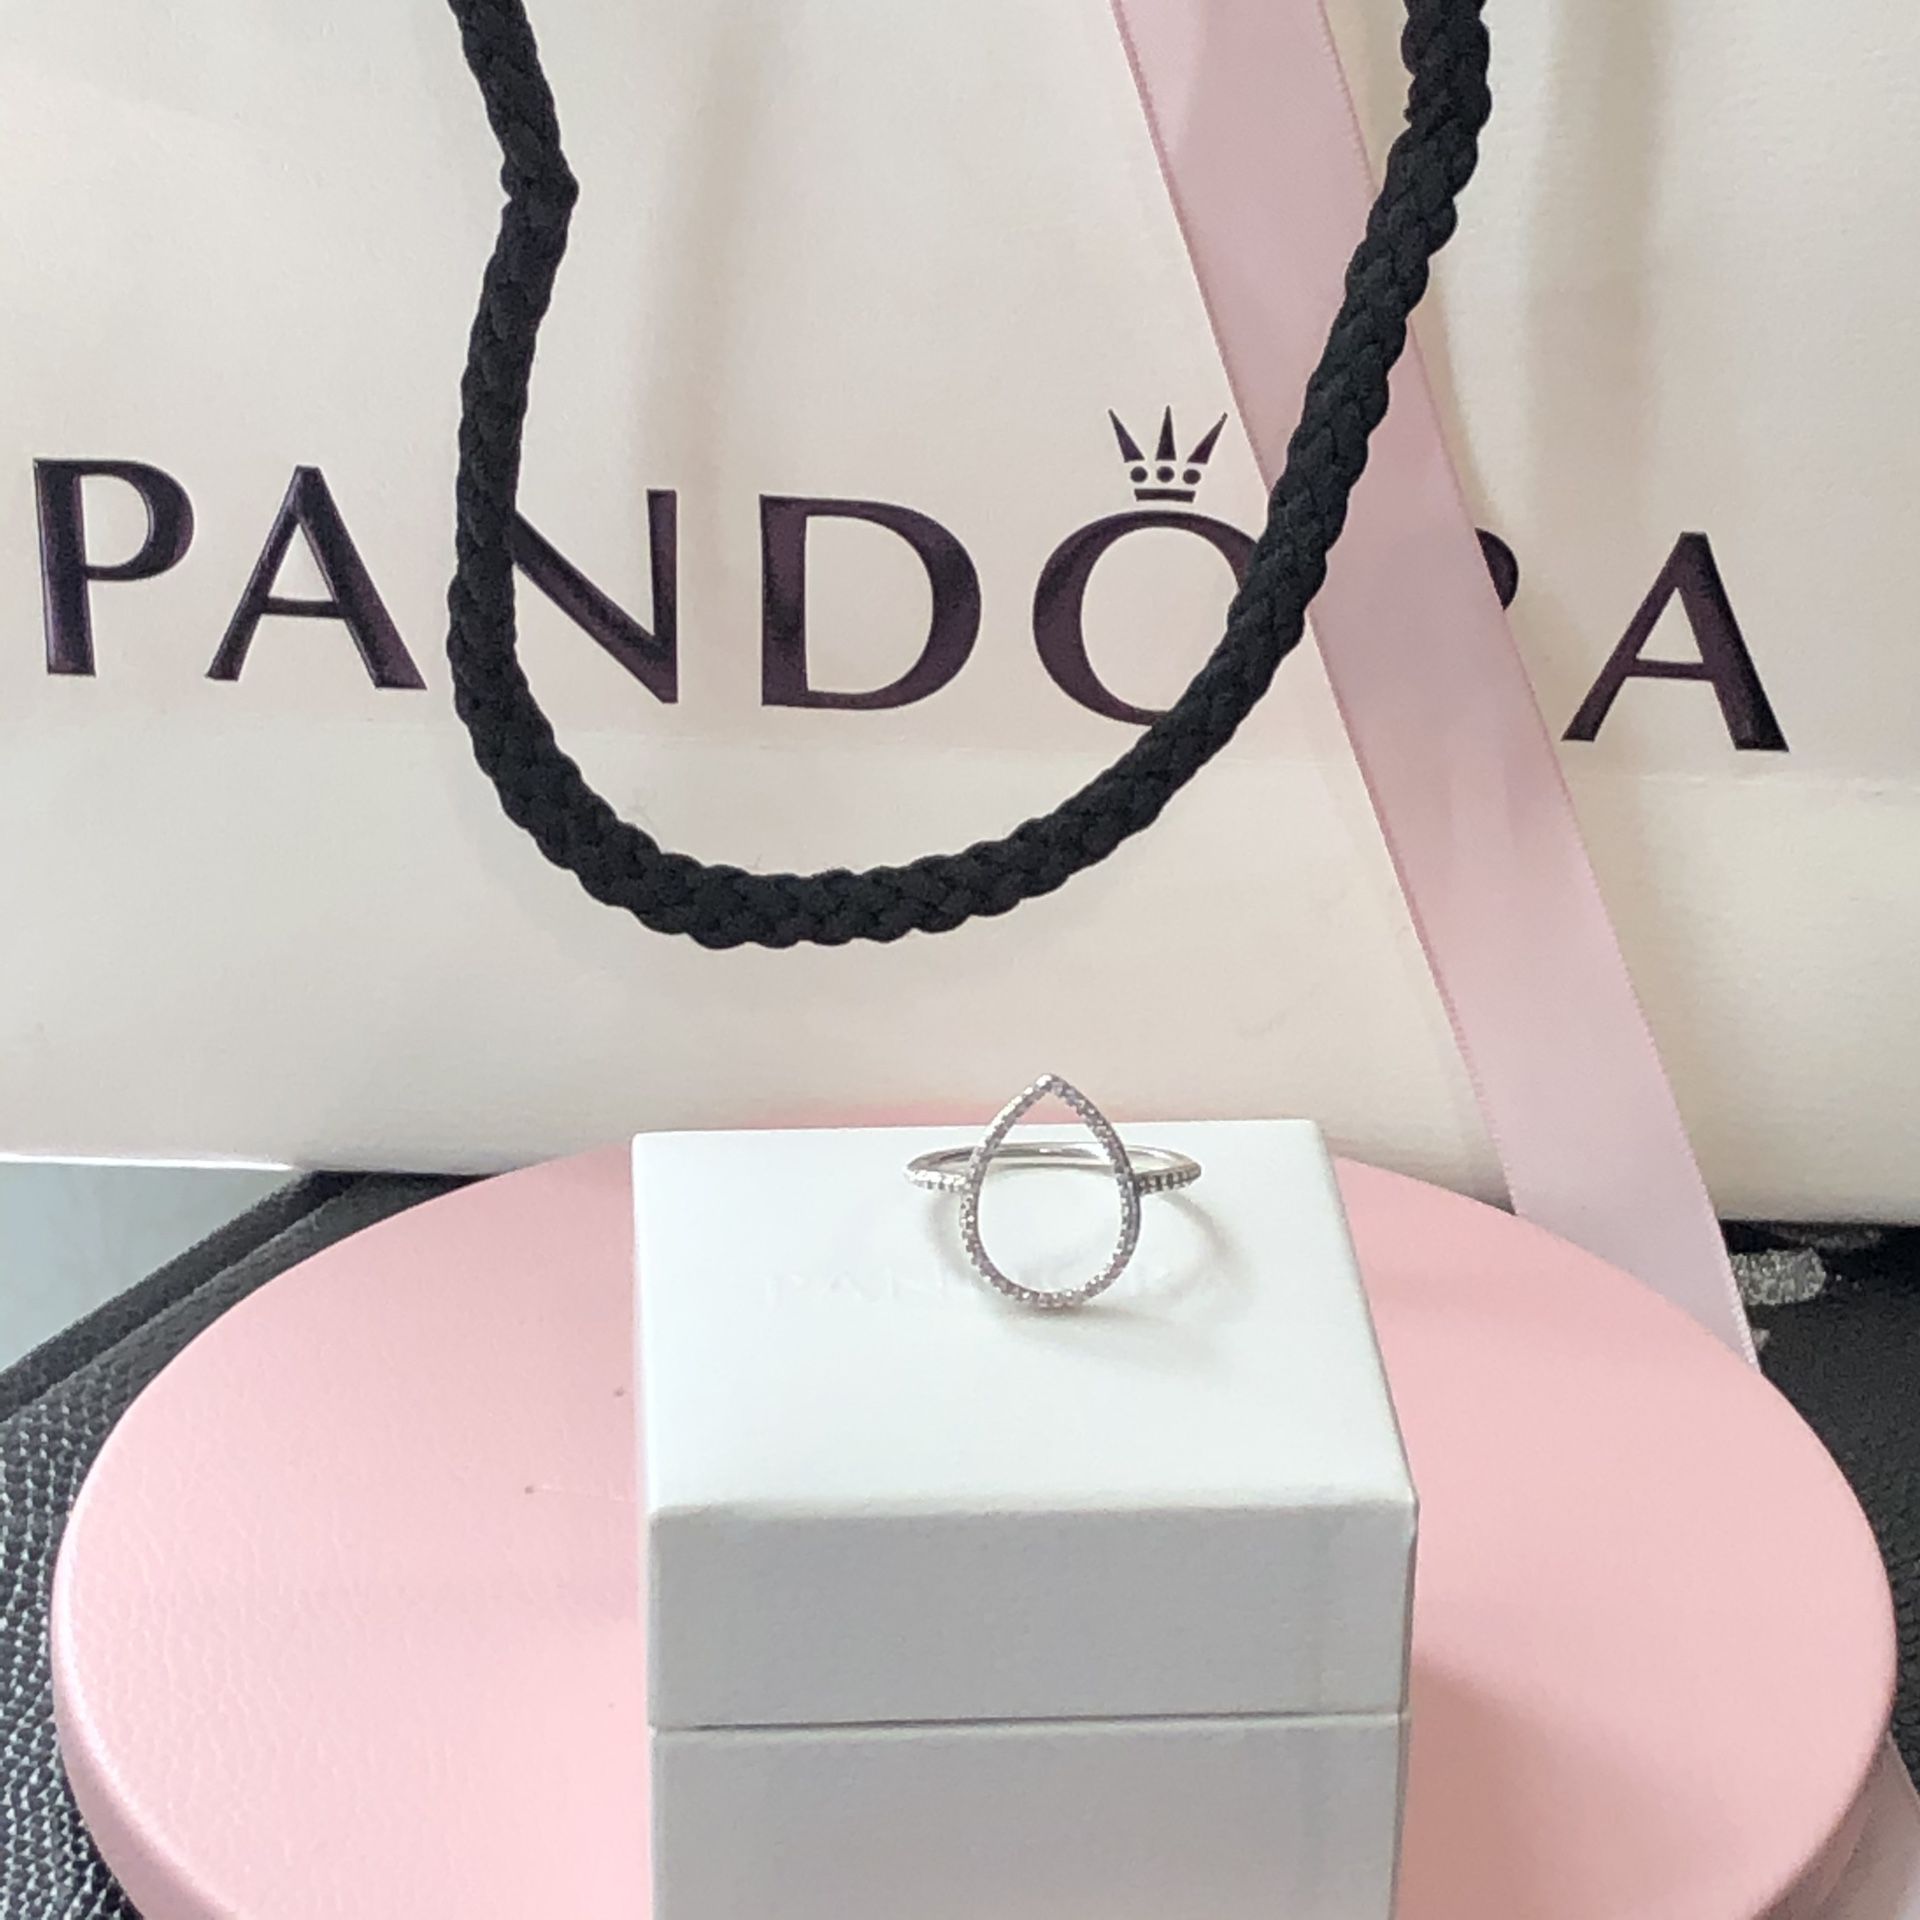 Pandora Teardrop Silhouette Ring